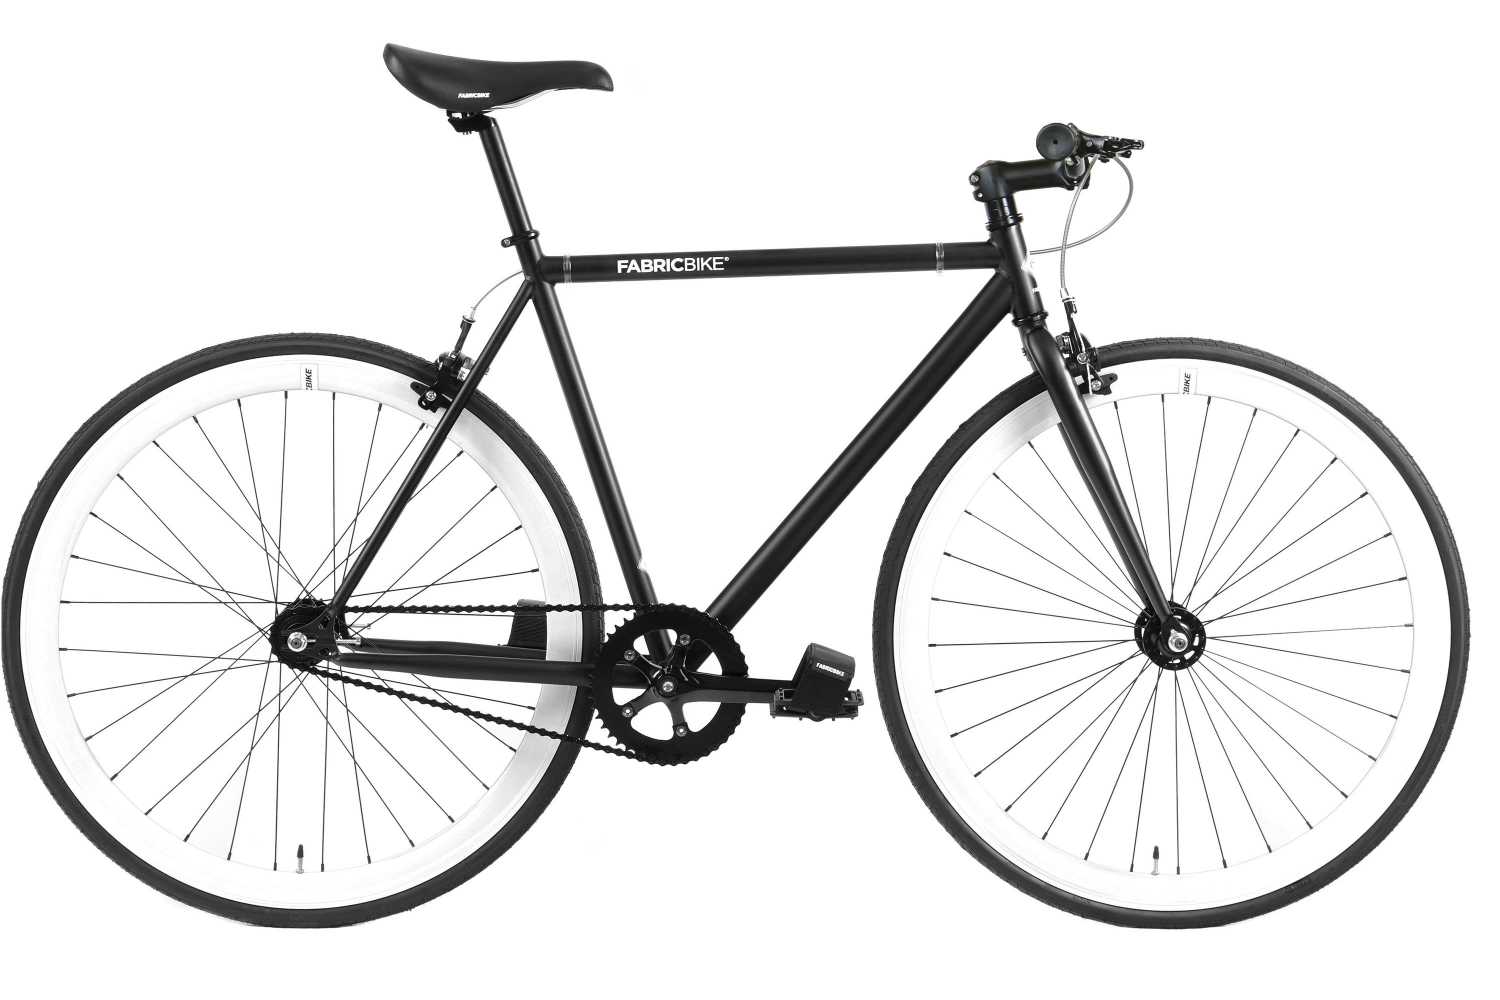 10Kg Talla M telaio nero in acciaio Hi-Ten velocità singola FabricBike-Fixie Bike bicicletta a cambio fisso 